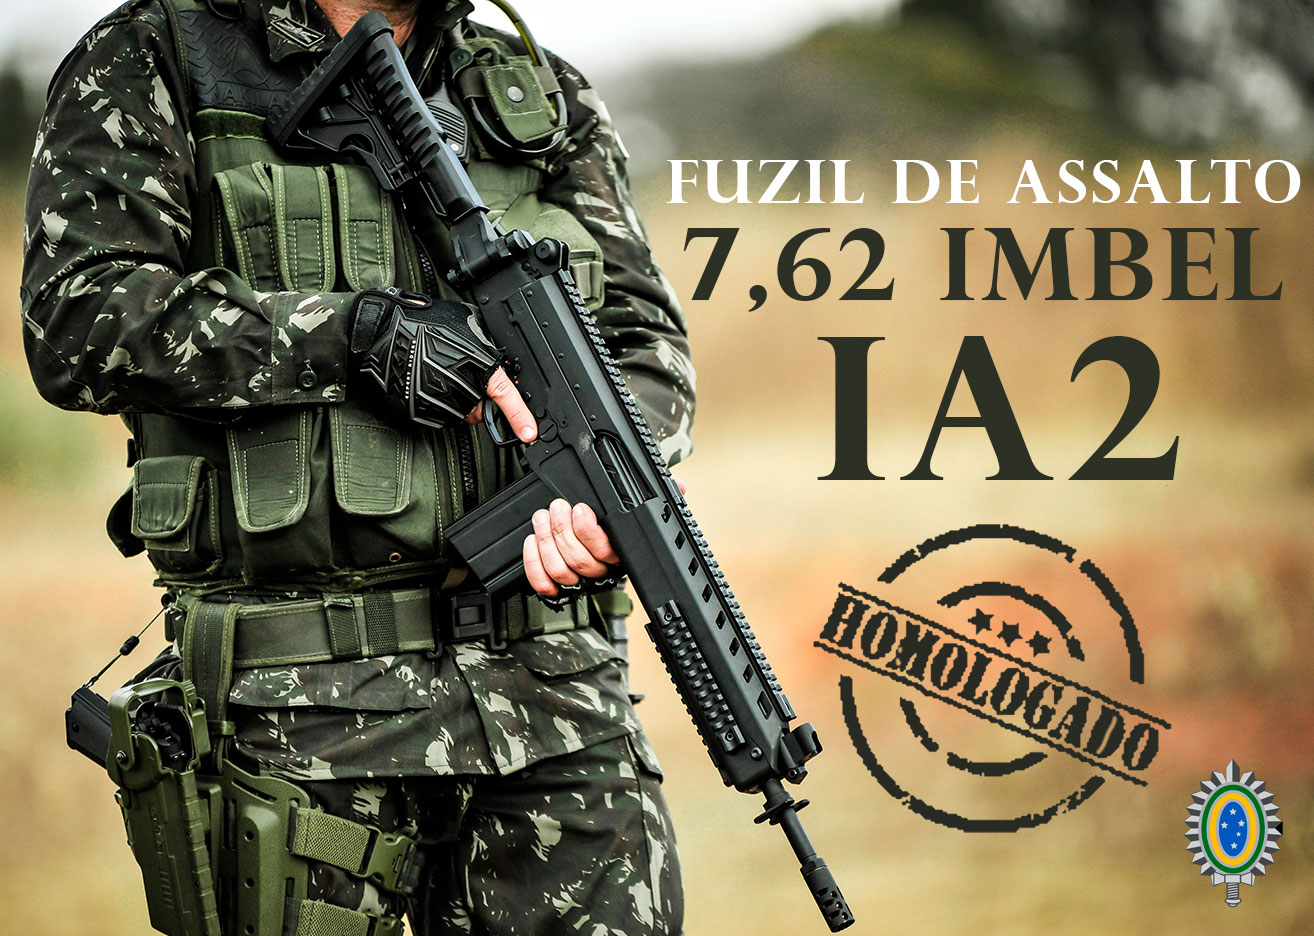 Fuzil de Assalto 7,62 IMBEL IA2 é homologado pelo Exército